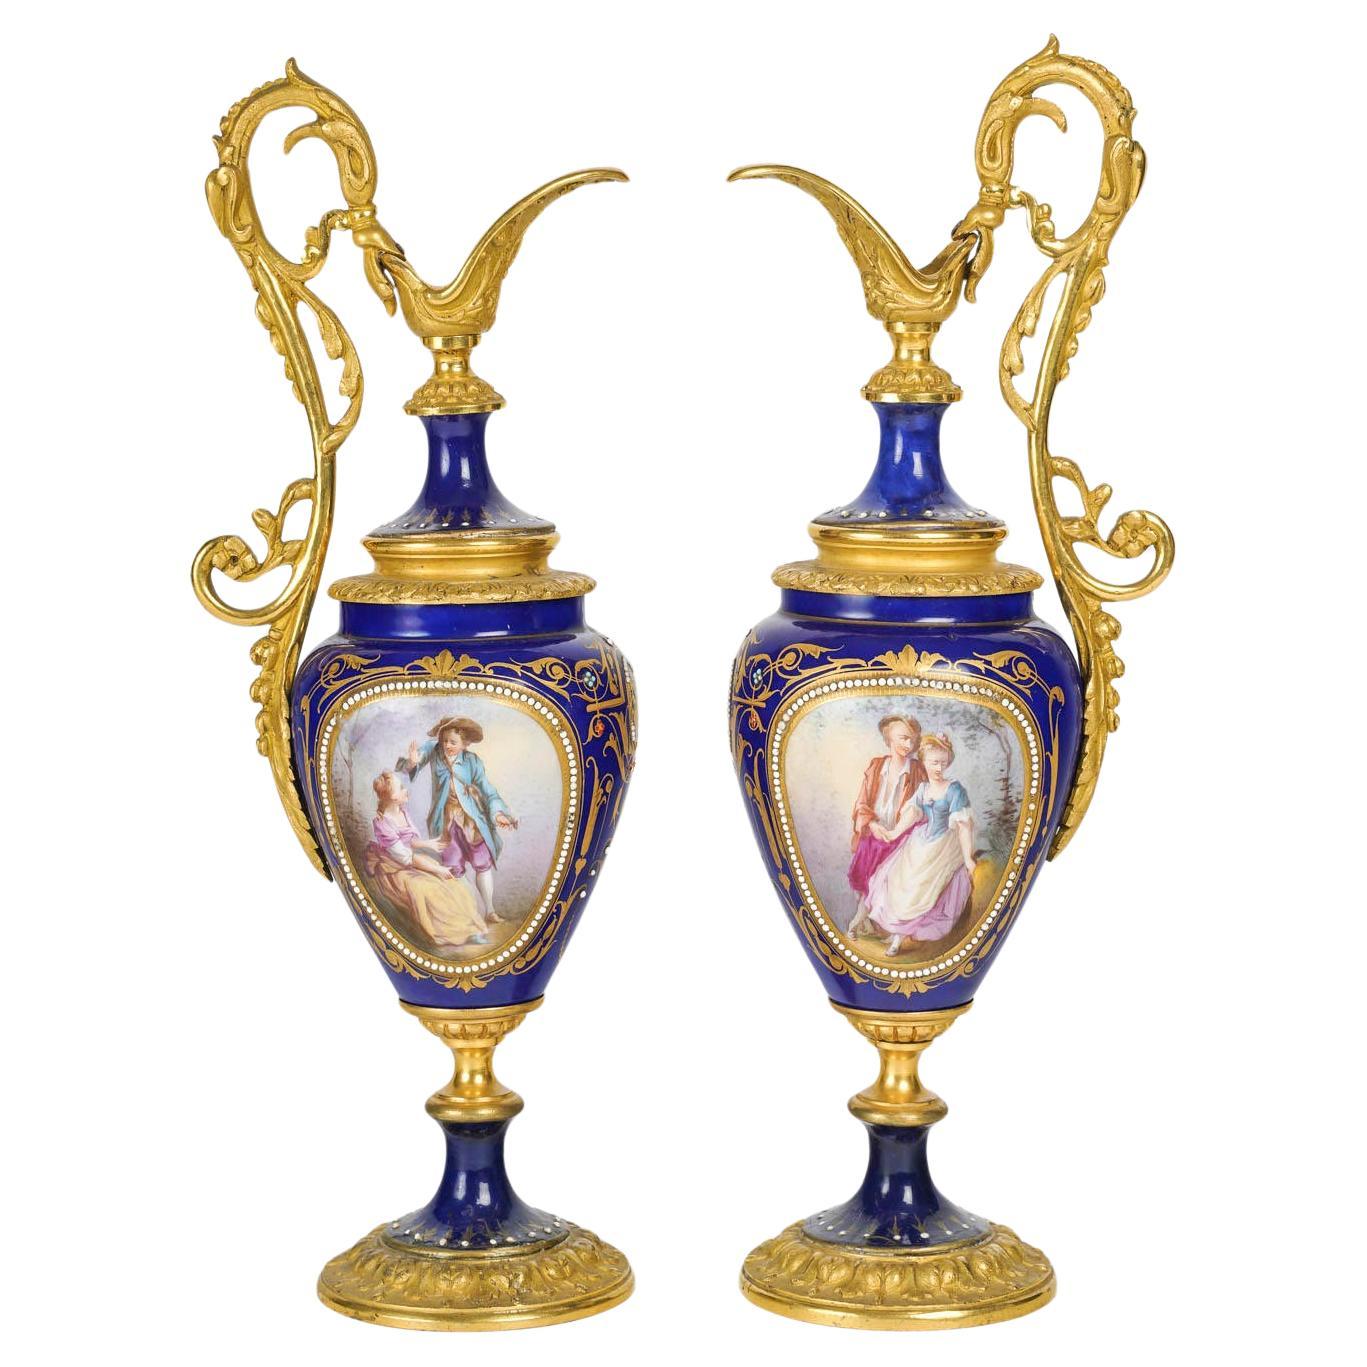 Paar Würfel aus vergoldeter Bronze und königsblauem Porzellan, 19. Jahrhundert, Napoleon III.-Periode